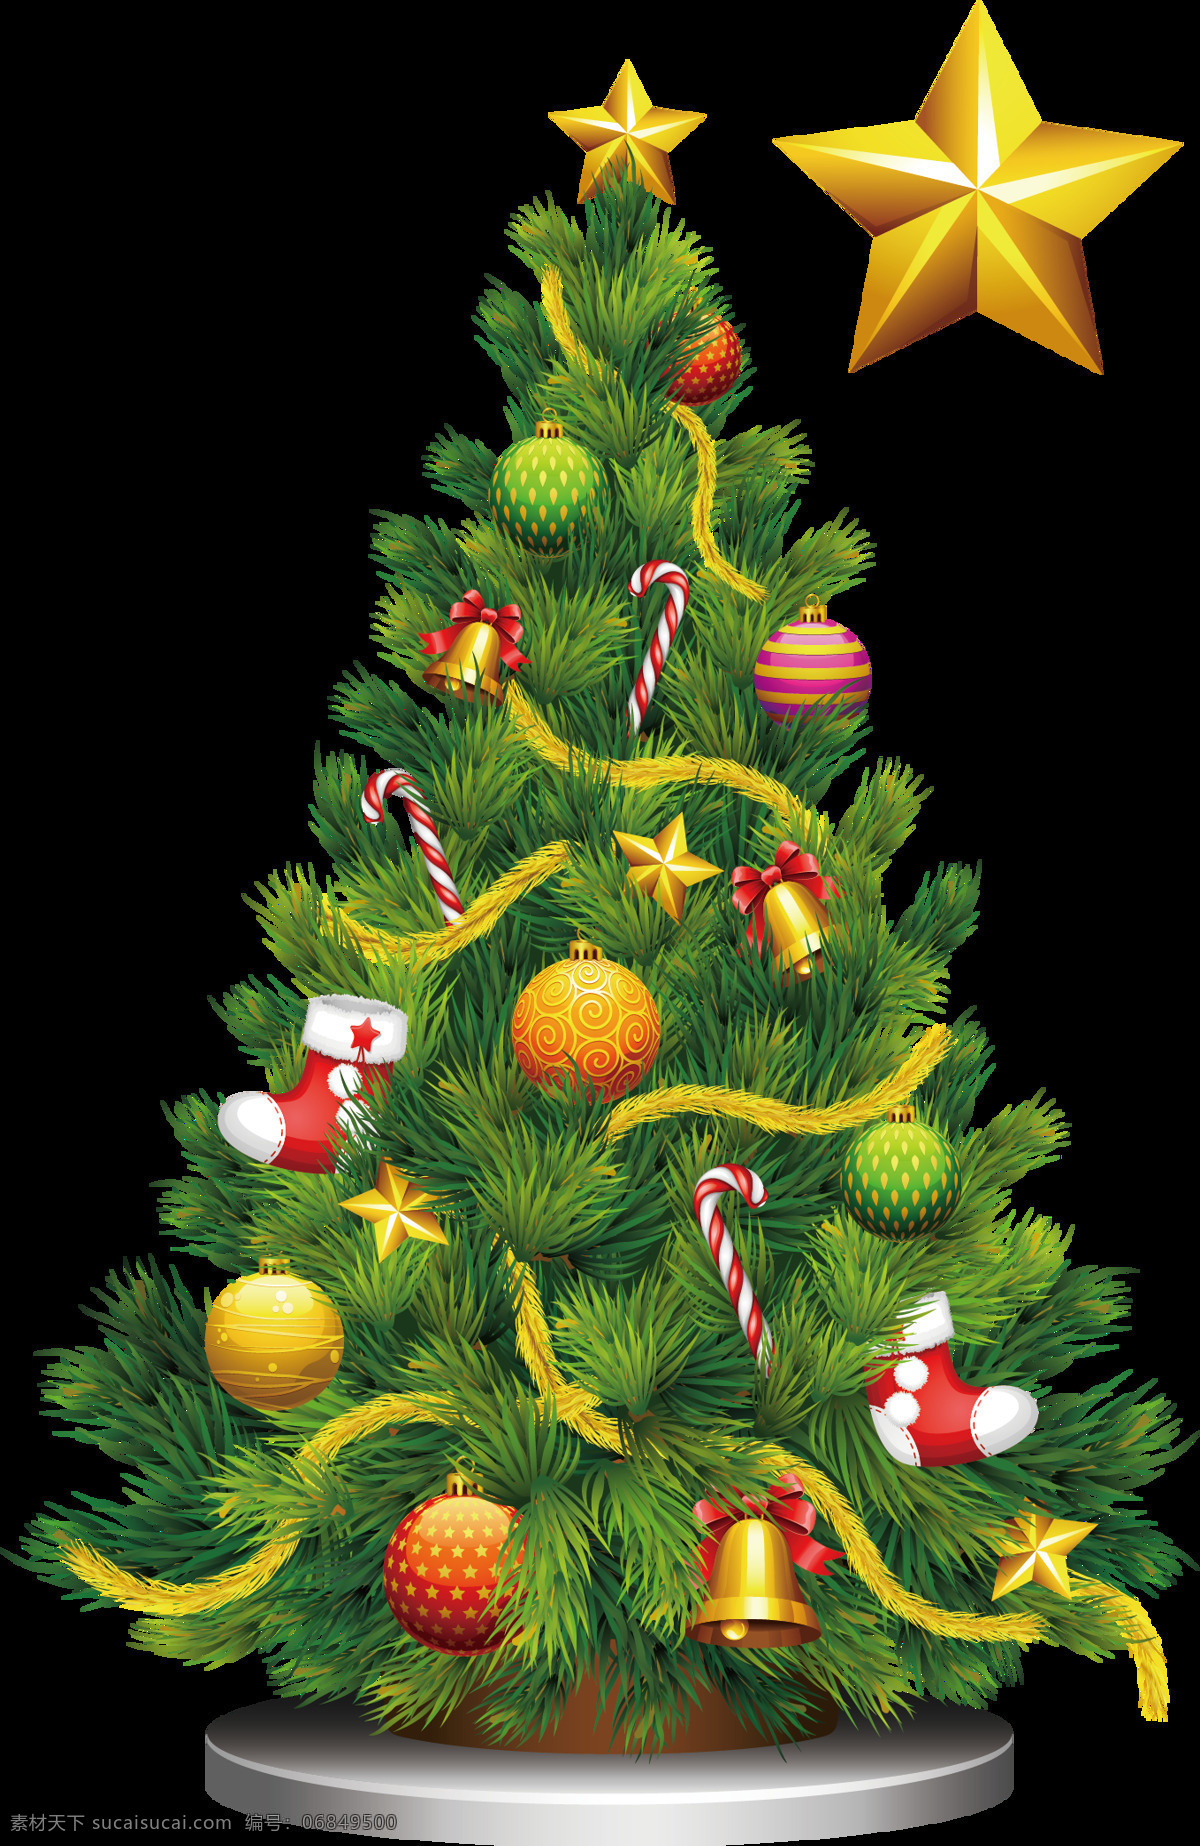 彩绘 银色 底托 圣诞树 透明 袜子 星星 丝带 铃铛 透明素材 免扣素材 装饰图片